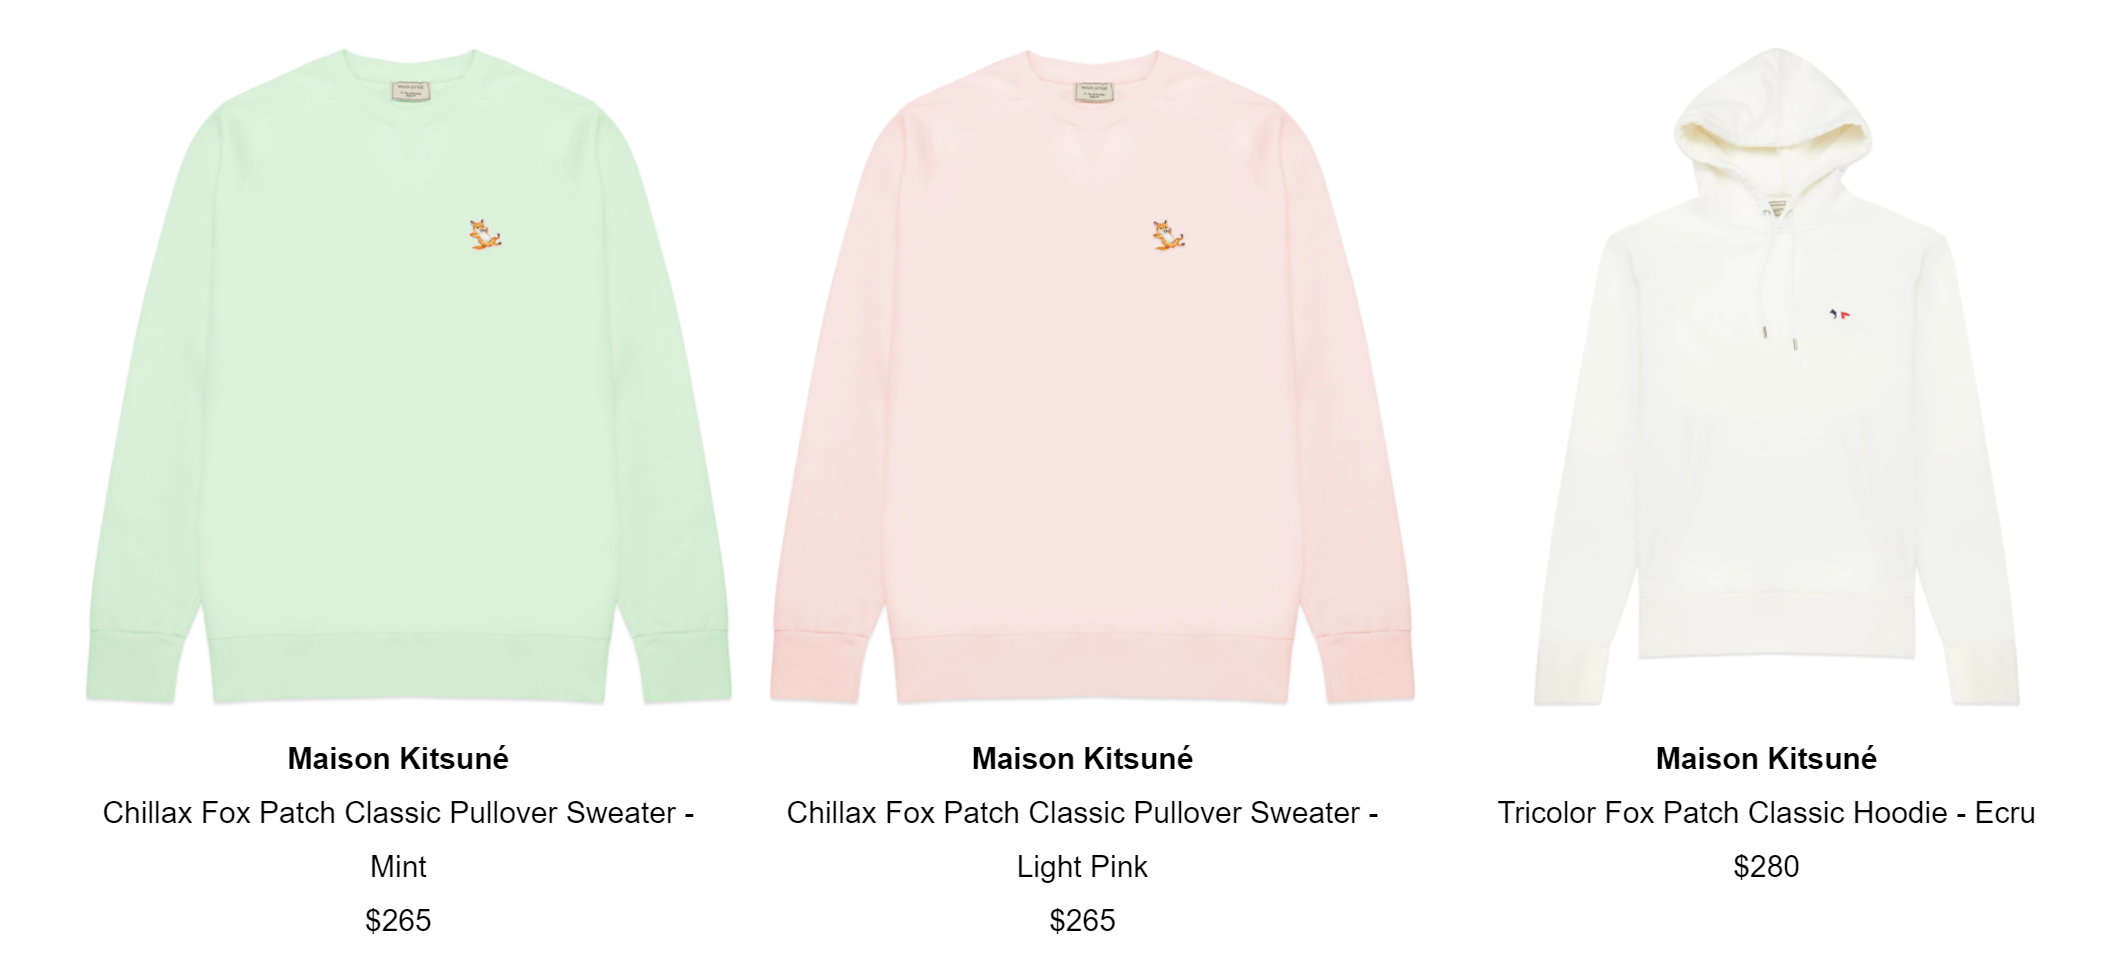 Maison Kitsune美衣5.3折起!$188收浅粉卫衣